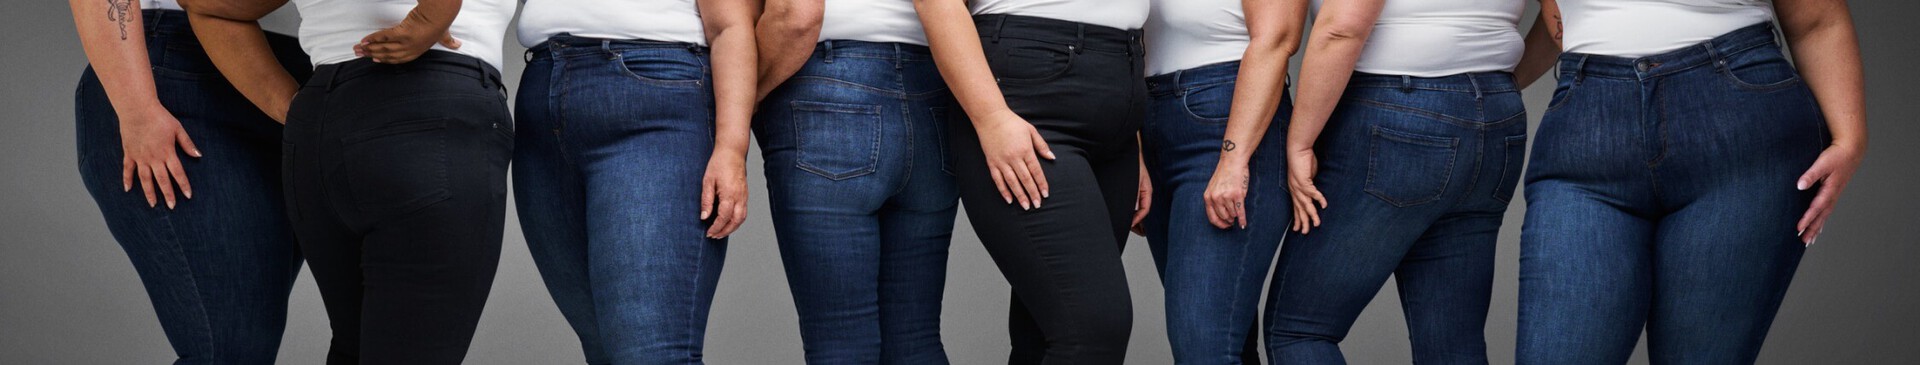 1 para jeansów – 3 kształty ciała 